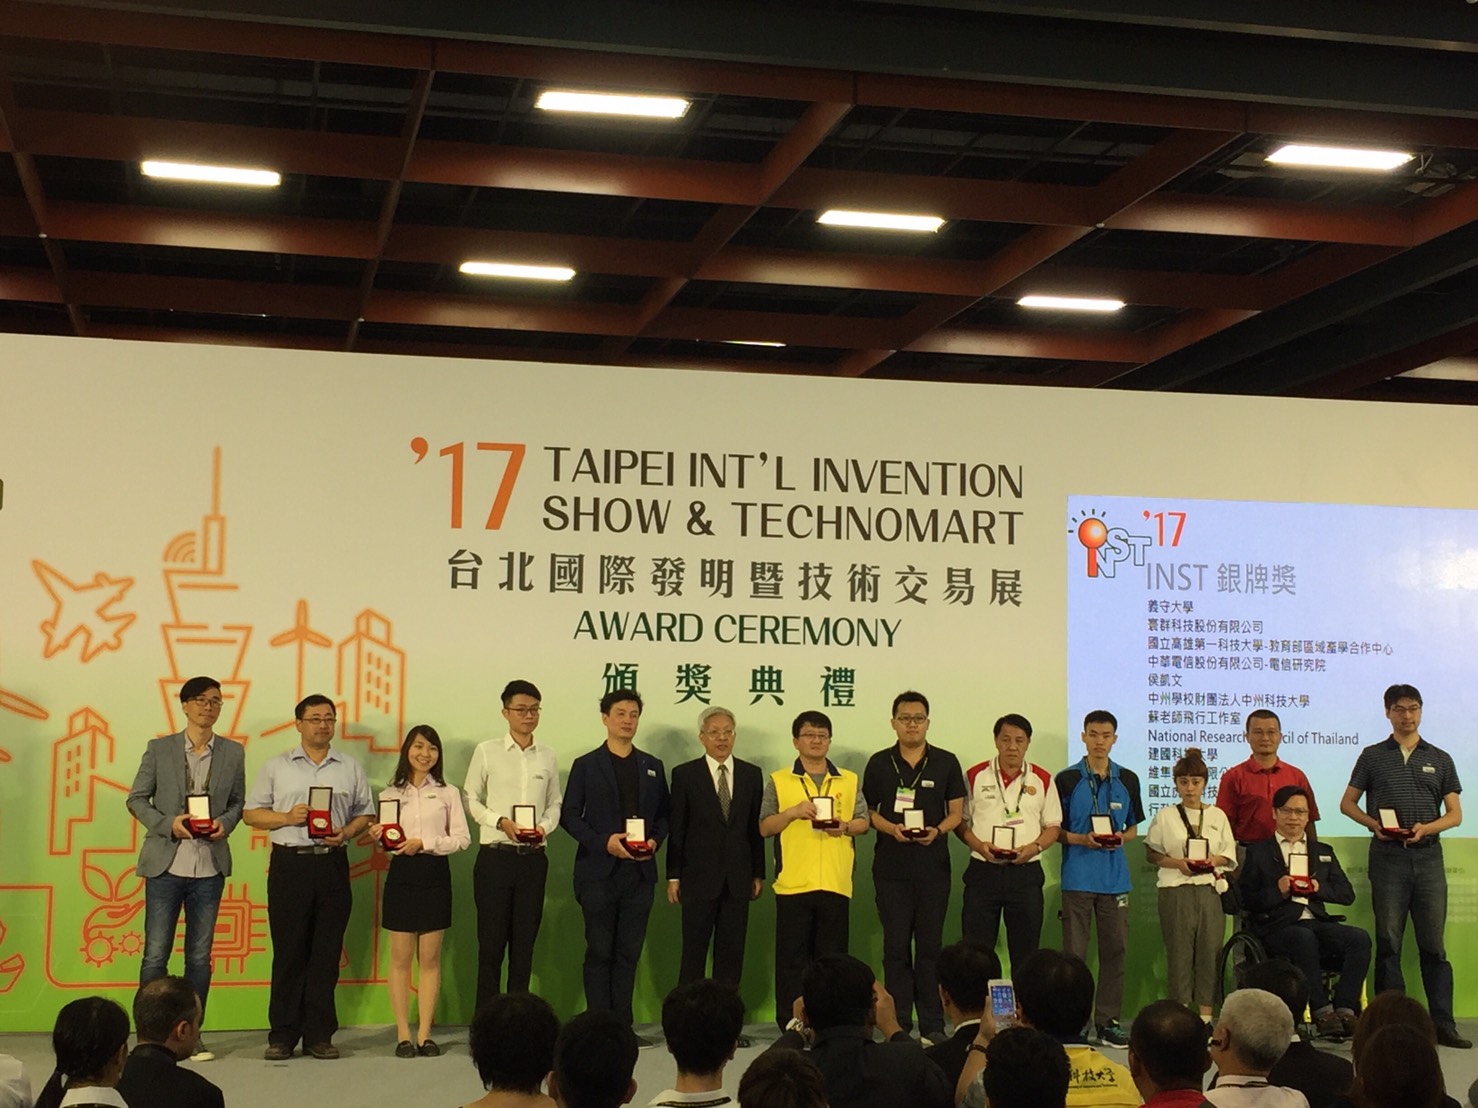 อาจารย์วทส.ร่วมส่งผลงานเข้าร่วมประกวดและจัดแสดงเวทีนานาชาติ Taipei International Invention Show & Technomart (INST2017) ณ ประเทศไต้หวัน